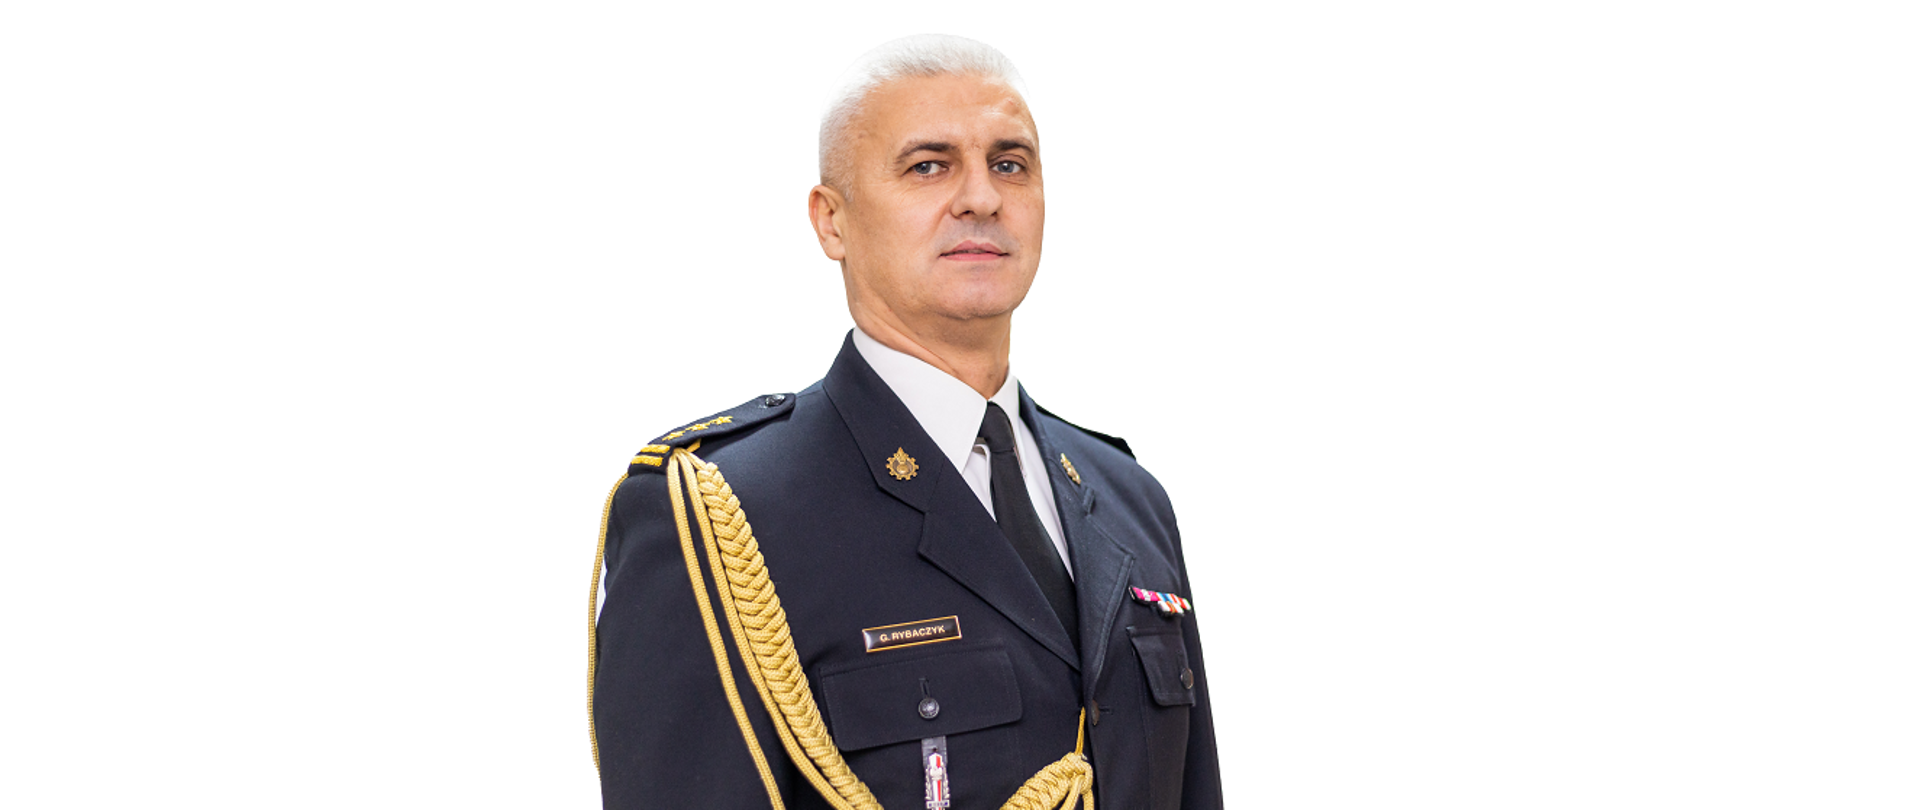 Zdjęcie przedstawia Komendanta Powiatowego PSP w Szczytnie st.bryg. Grzegorza Rybaczyka w mundurze służbowym